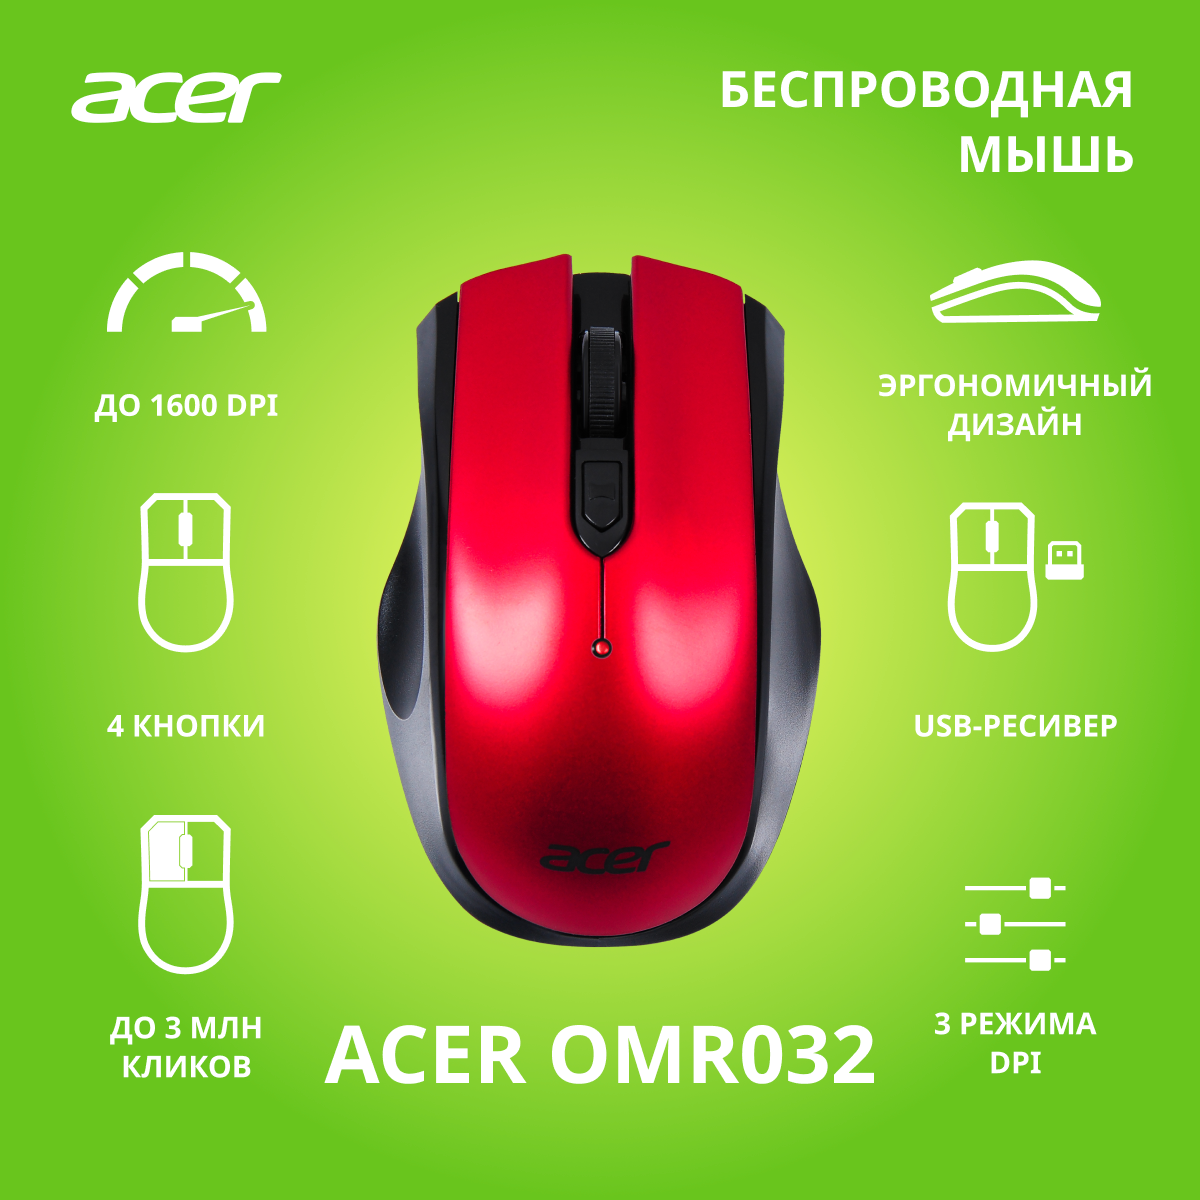 Мышь Acer OMR032 черный/красный (zl. mceee.009)